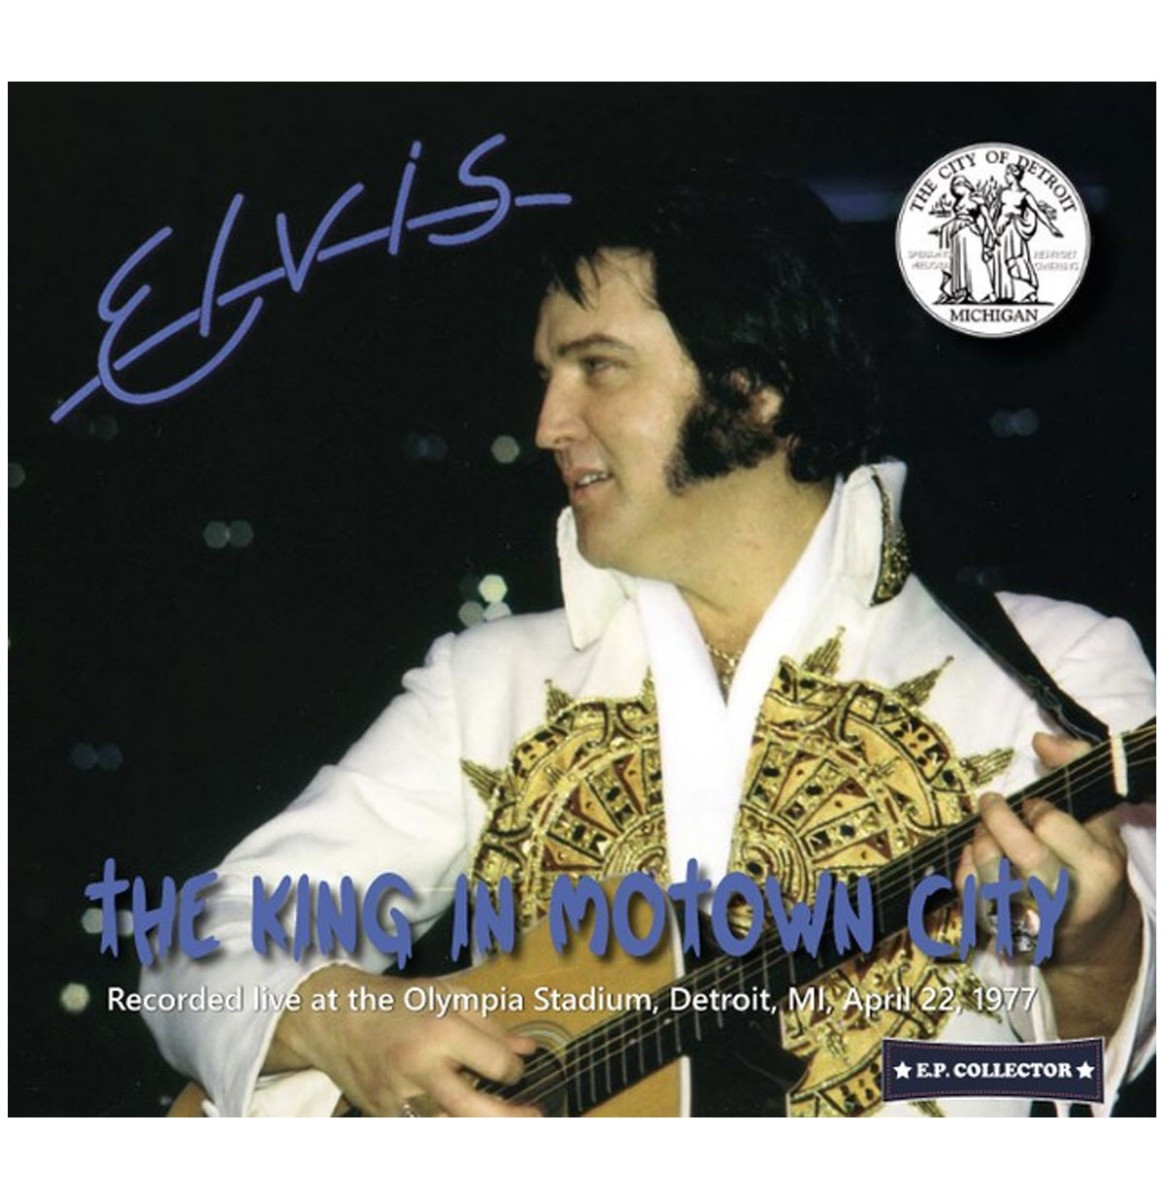 Elvis Presley - The King in Motown City CD